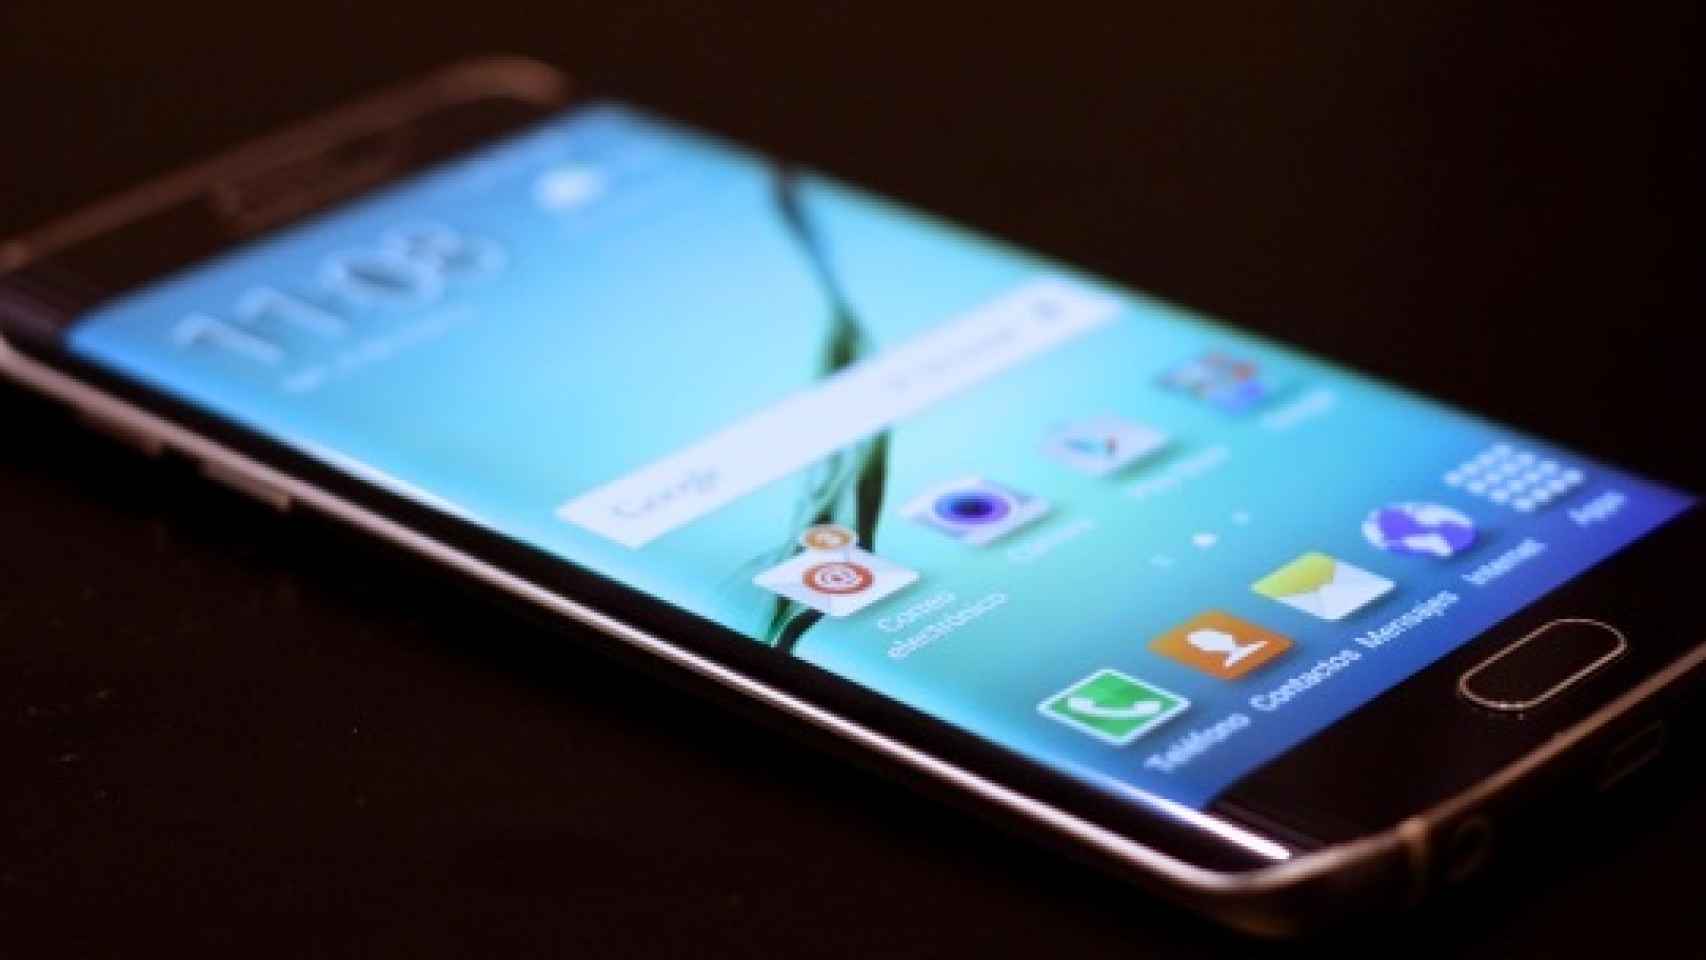 Instala las aplicaciones del Galaxy S6 en tu Samsung con Lollipop